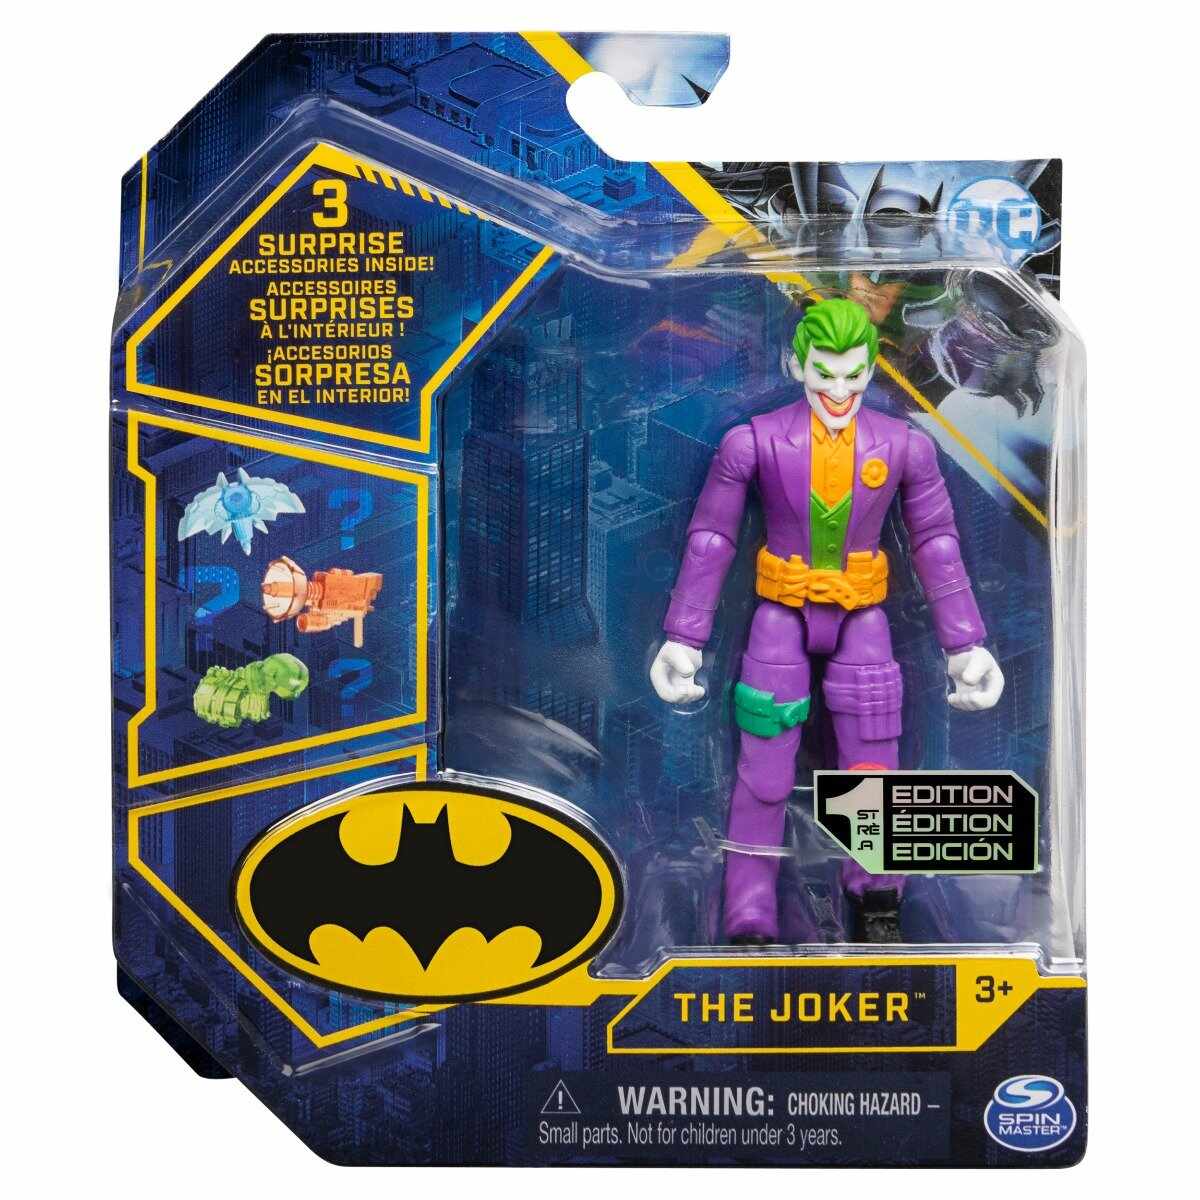 Set Figurina cu accesorii surpriza Batman, The Joker 20129810